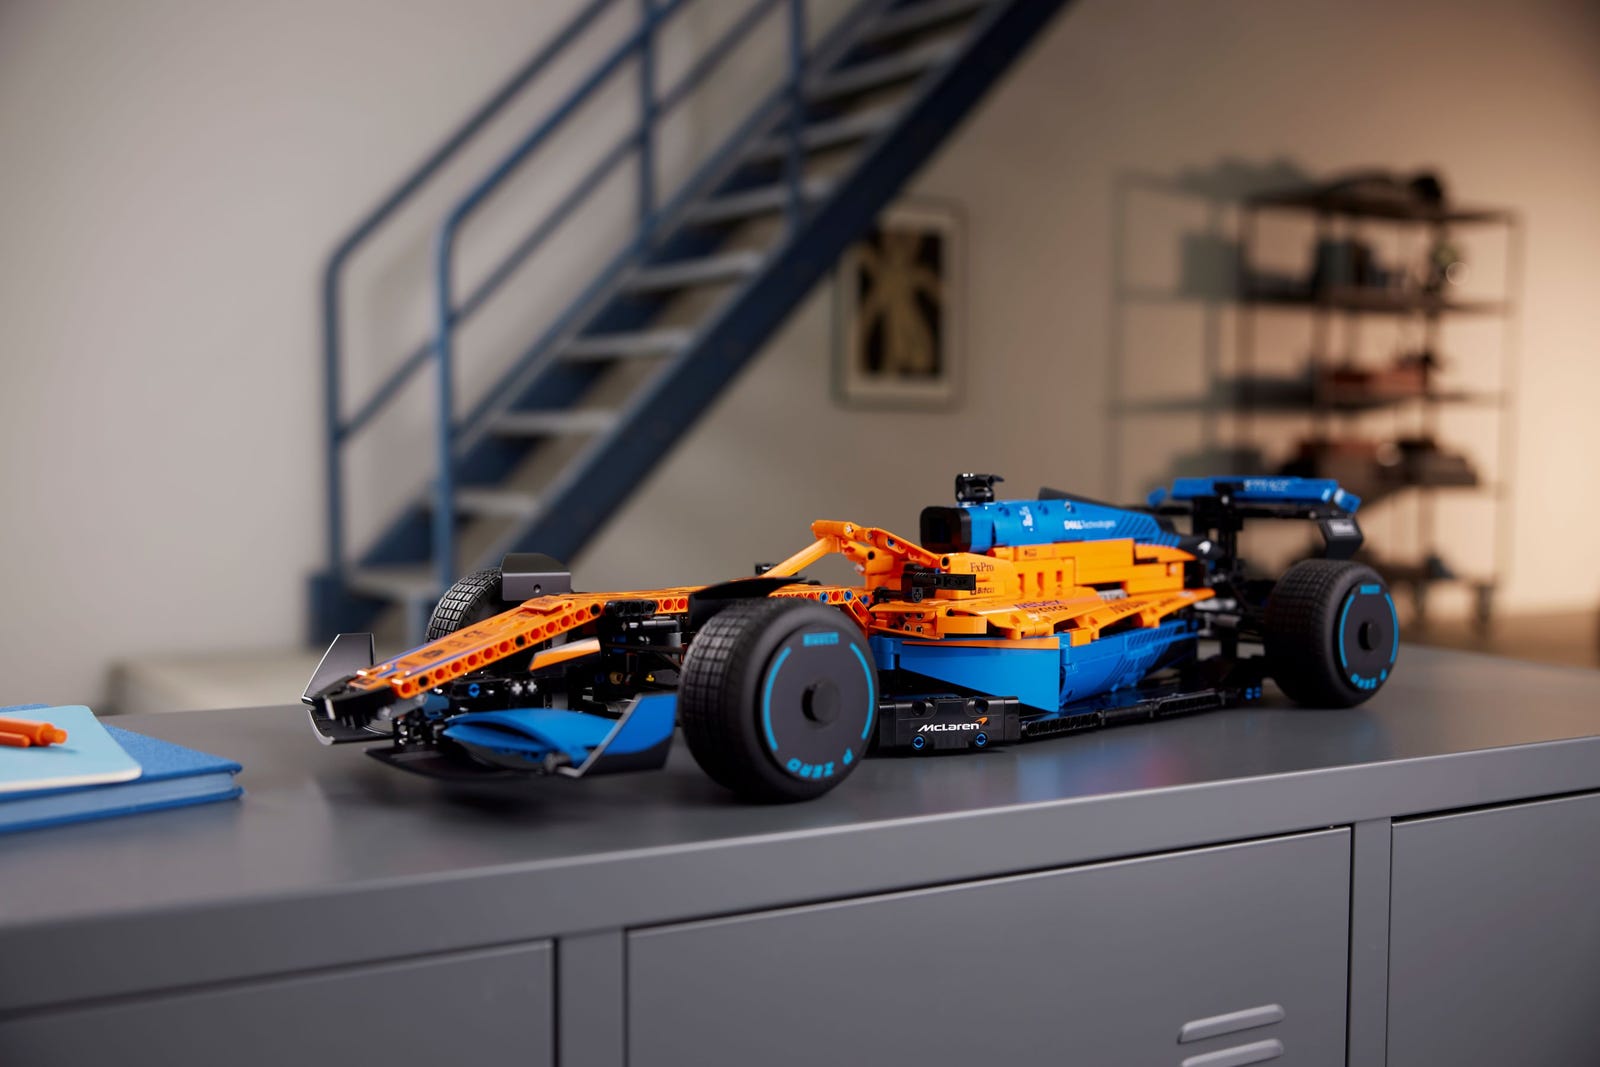 Lego McLaren Formule 1 29